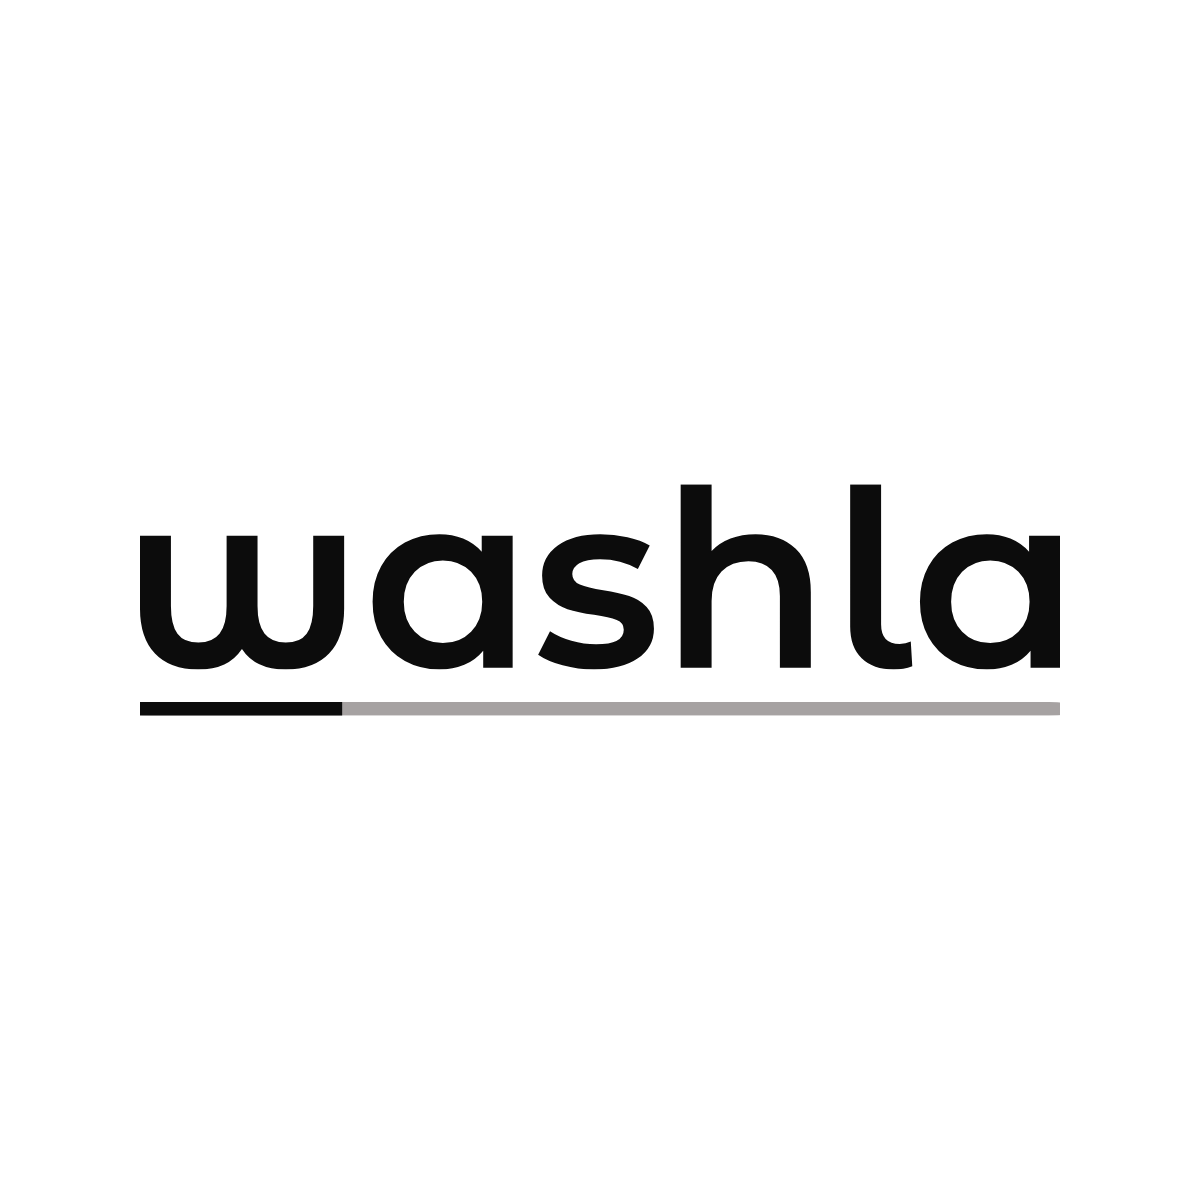 WASHLA logo